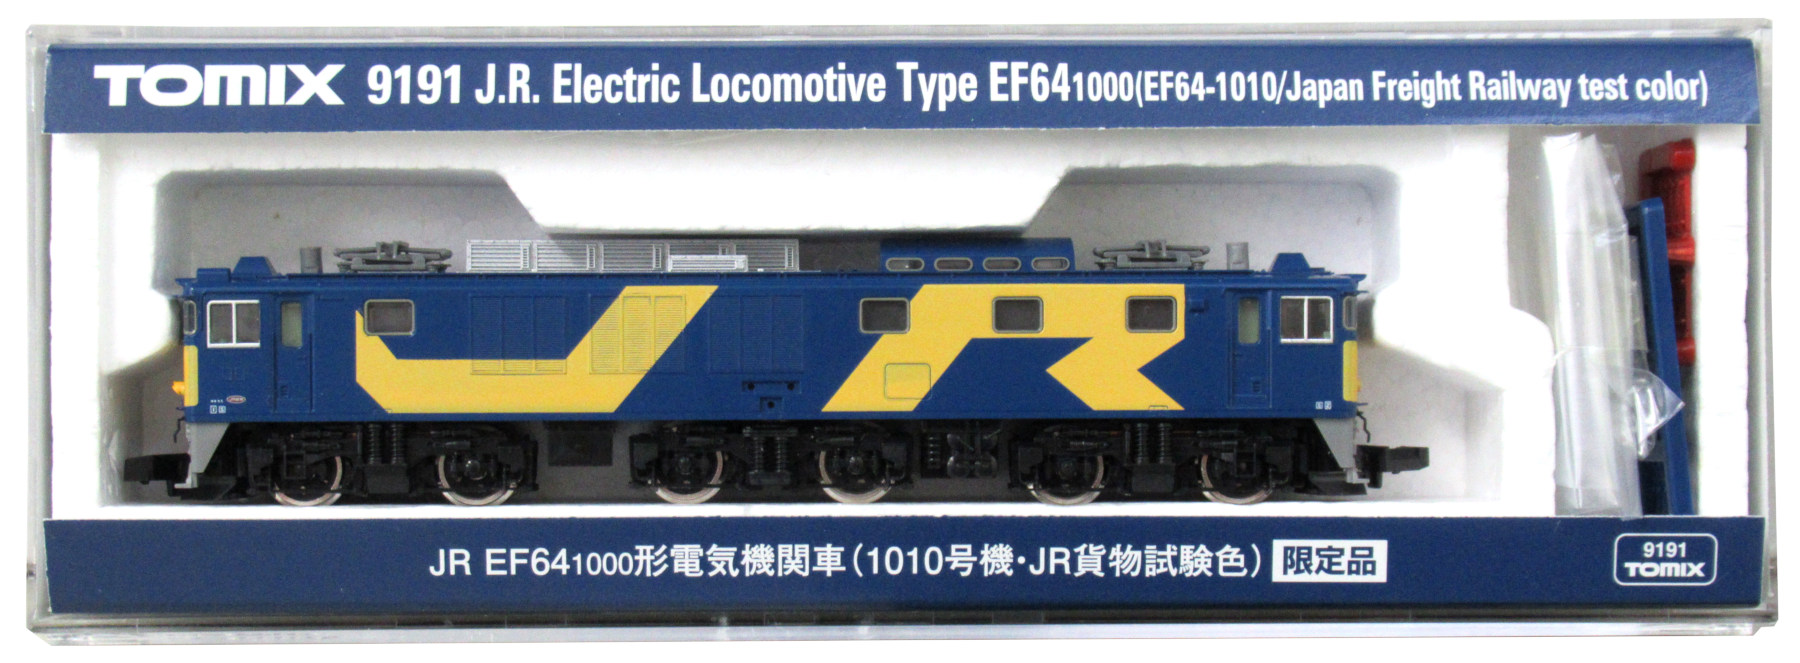 得価最安値TOMIX 9191 JR EF64-1000 電気機関車 (1010号機・JR貨物試験色) 限定品 電気機関車